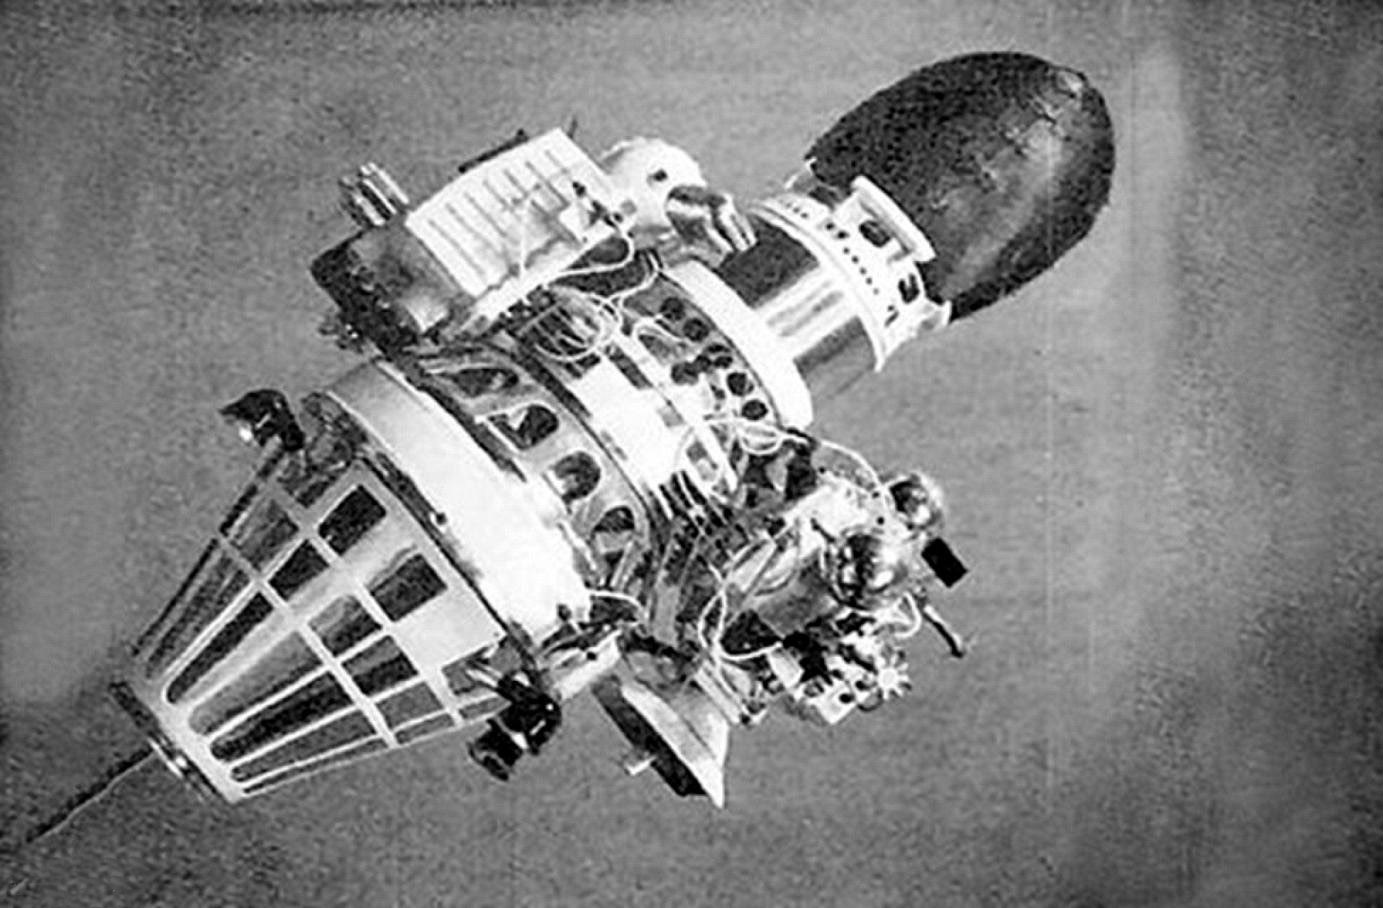 Луна 9 10. Луна-10 автоматическая межпланетная станция. Луна-5 автоматическая межпланетная станция. Советская АМС «Луна - 9». Луна-2 автоматическая межпланетная станция.